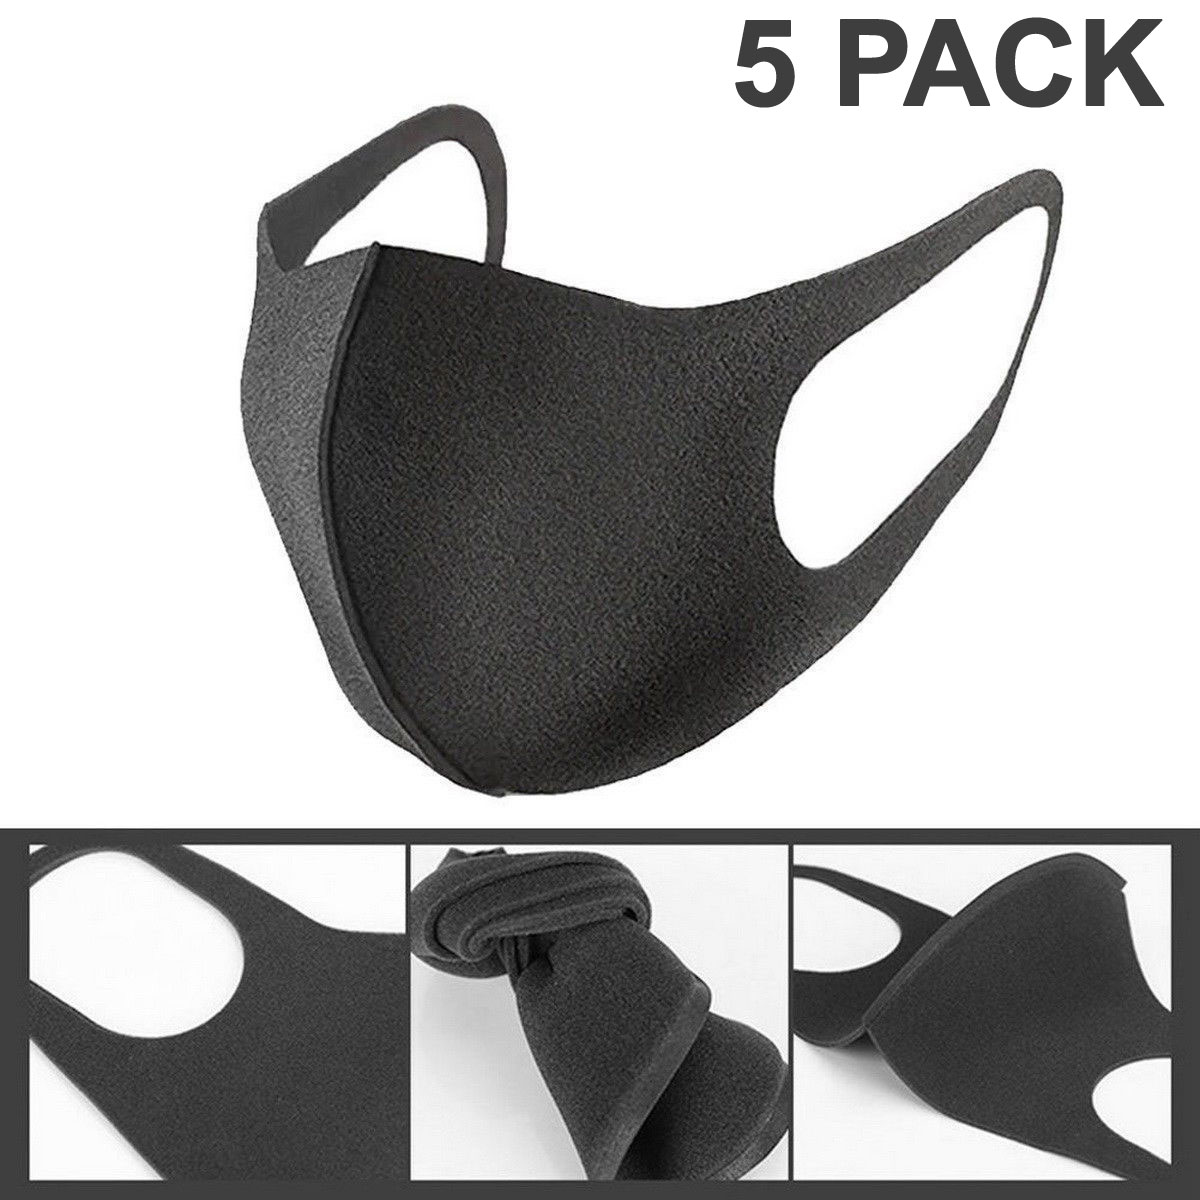 5 Pcs Face Mask Black Washable Reusable Breathable Unisex Masks Cotton 0281